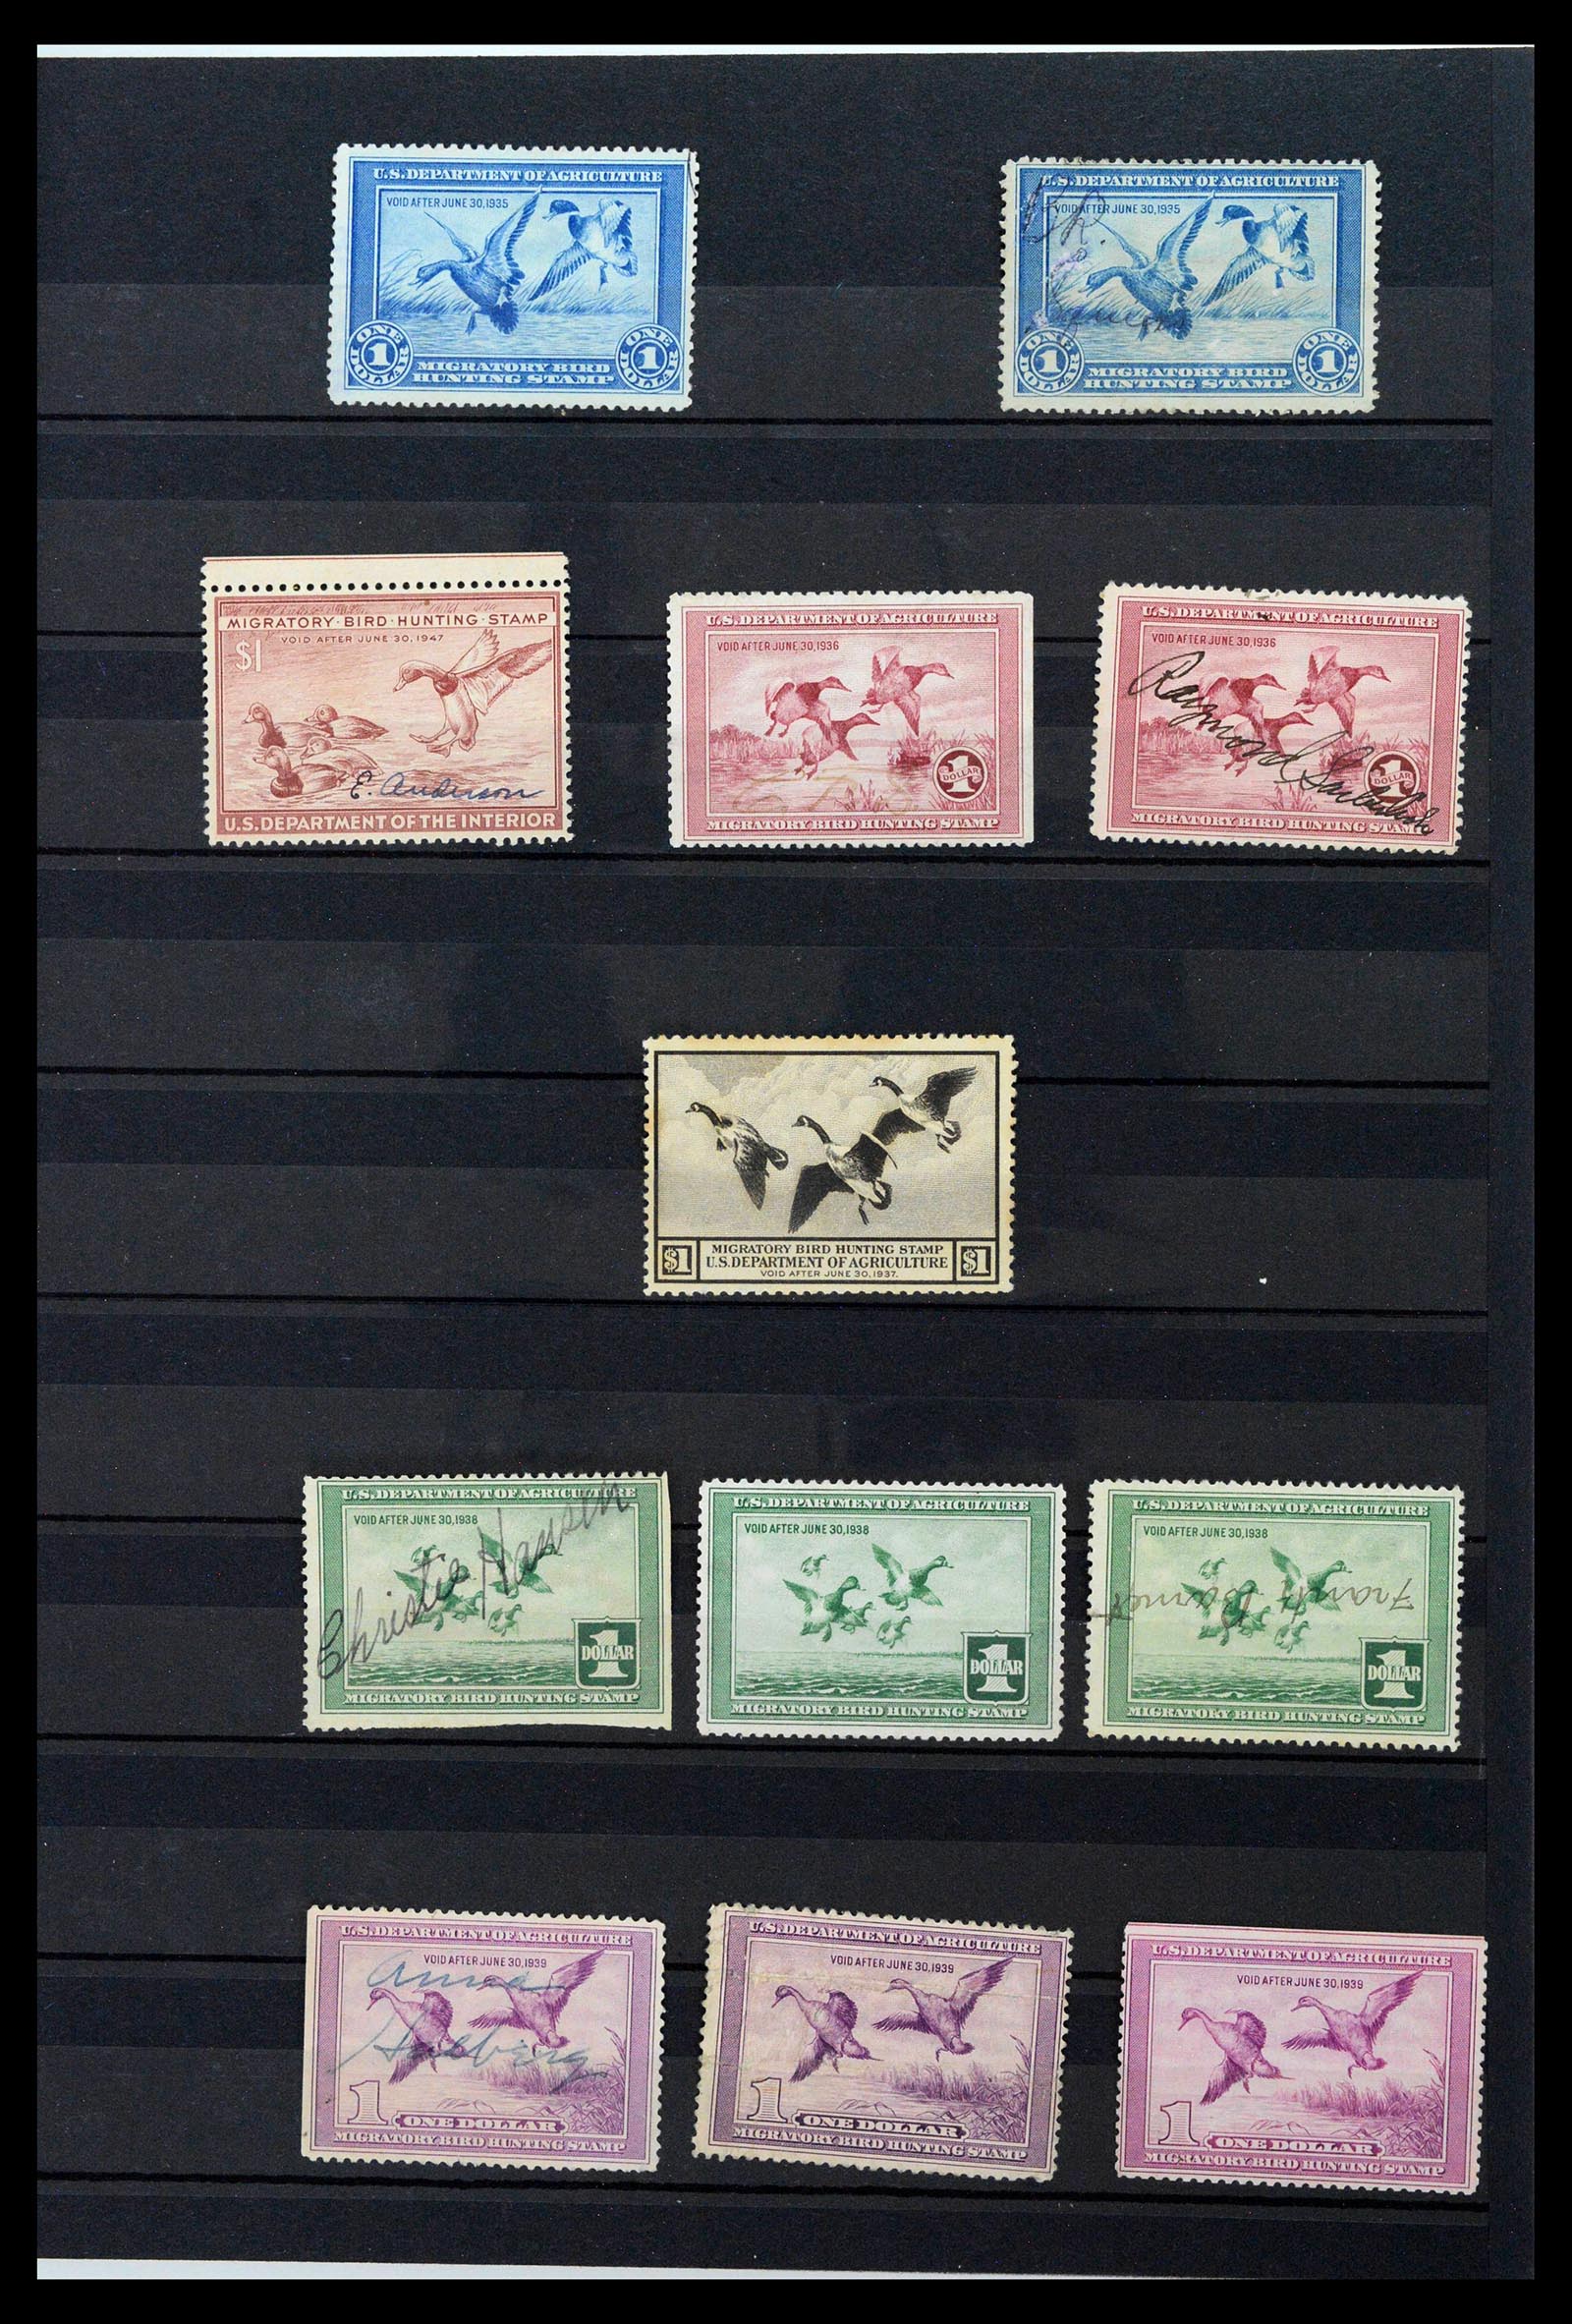 39426 0001 - Postzegelverzameling 39426 USA duckstamps 1934-2007.